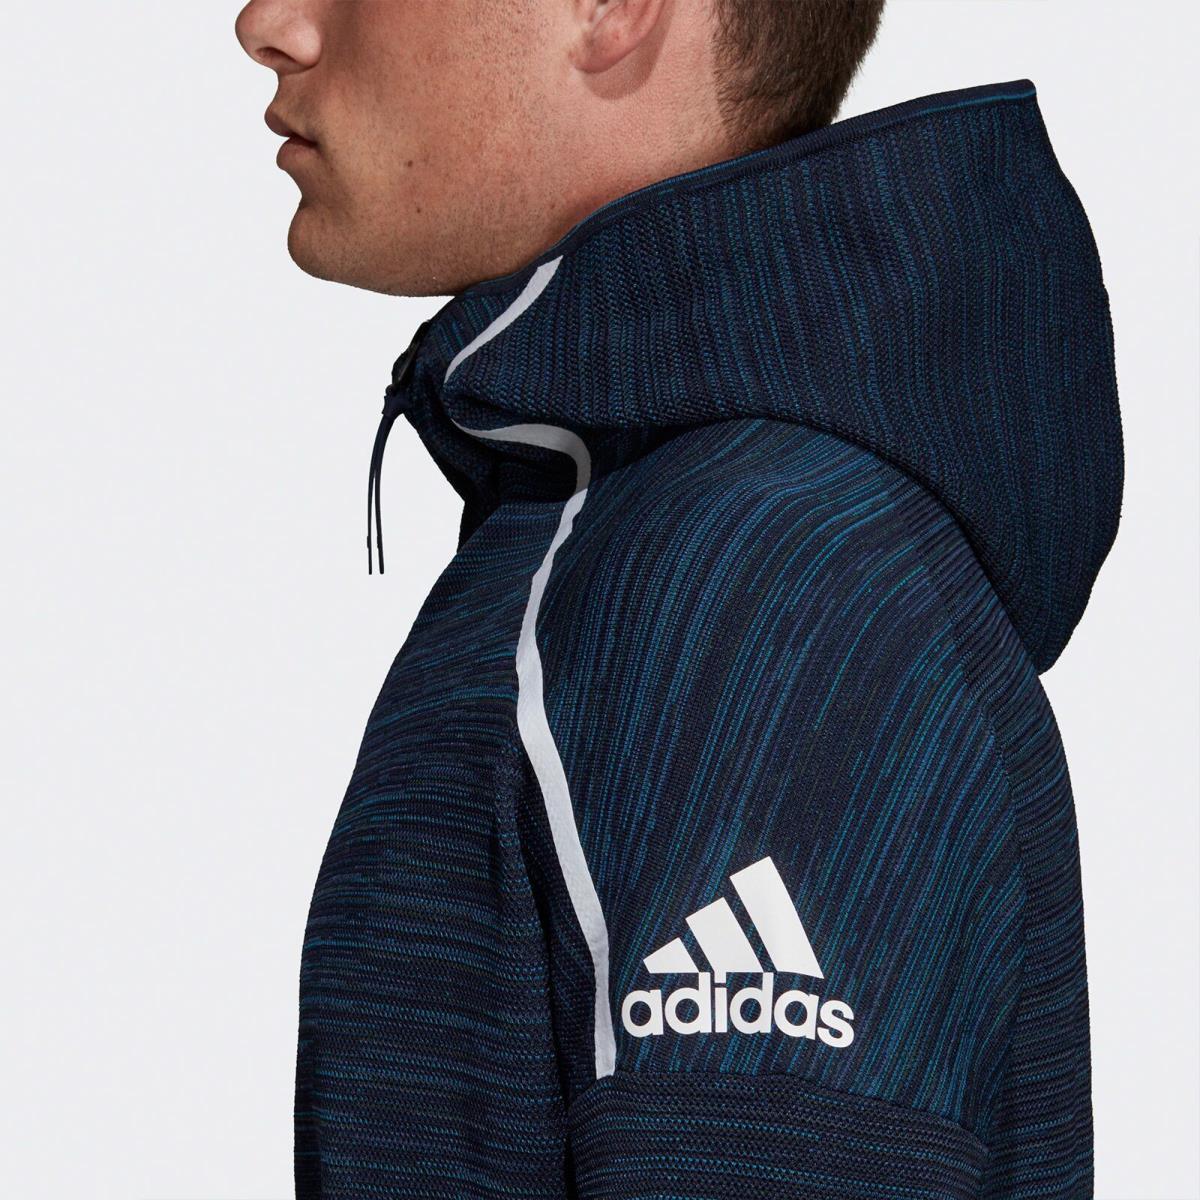 Adidas clothing  - Legink 2